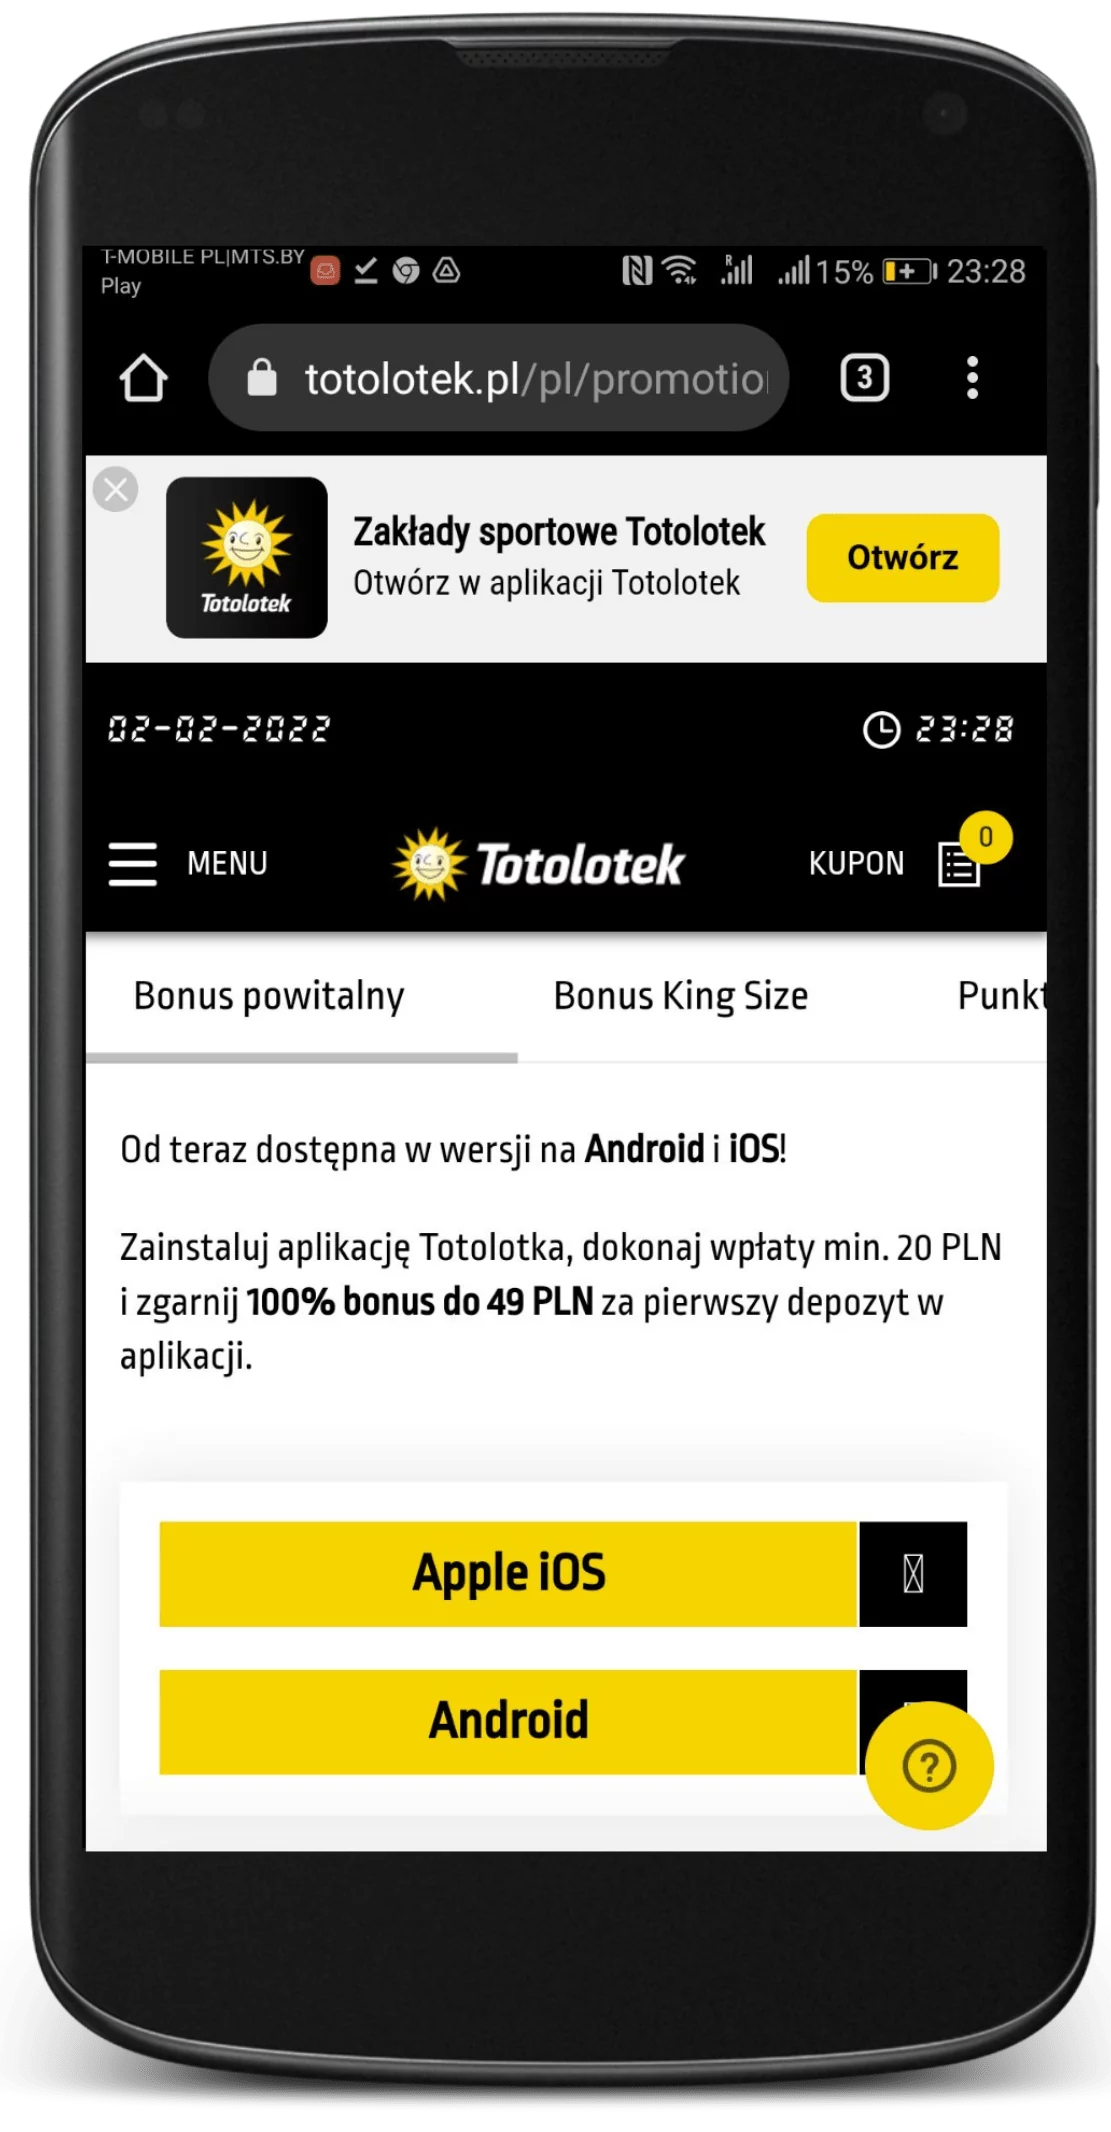 Wejdź na oficjalną stronę legalnego bukmachera Totolotek, na dole strony wcisnij przycisk i pobierz aplikacje mobilna na Android i IOS